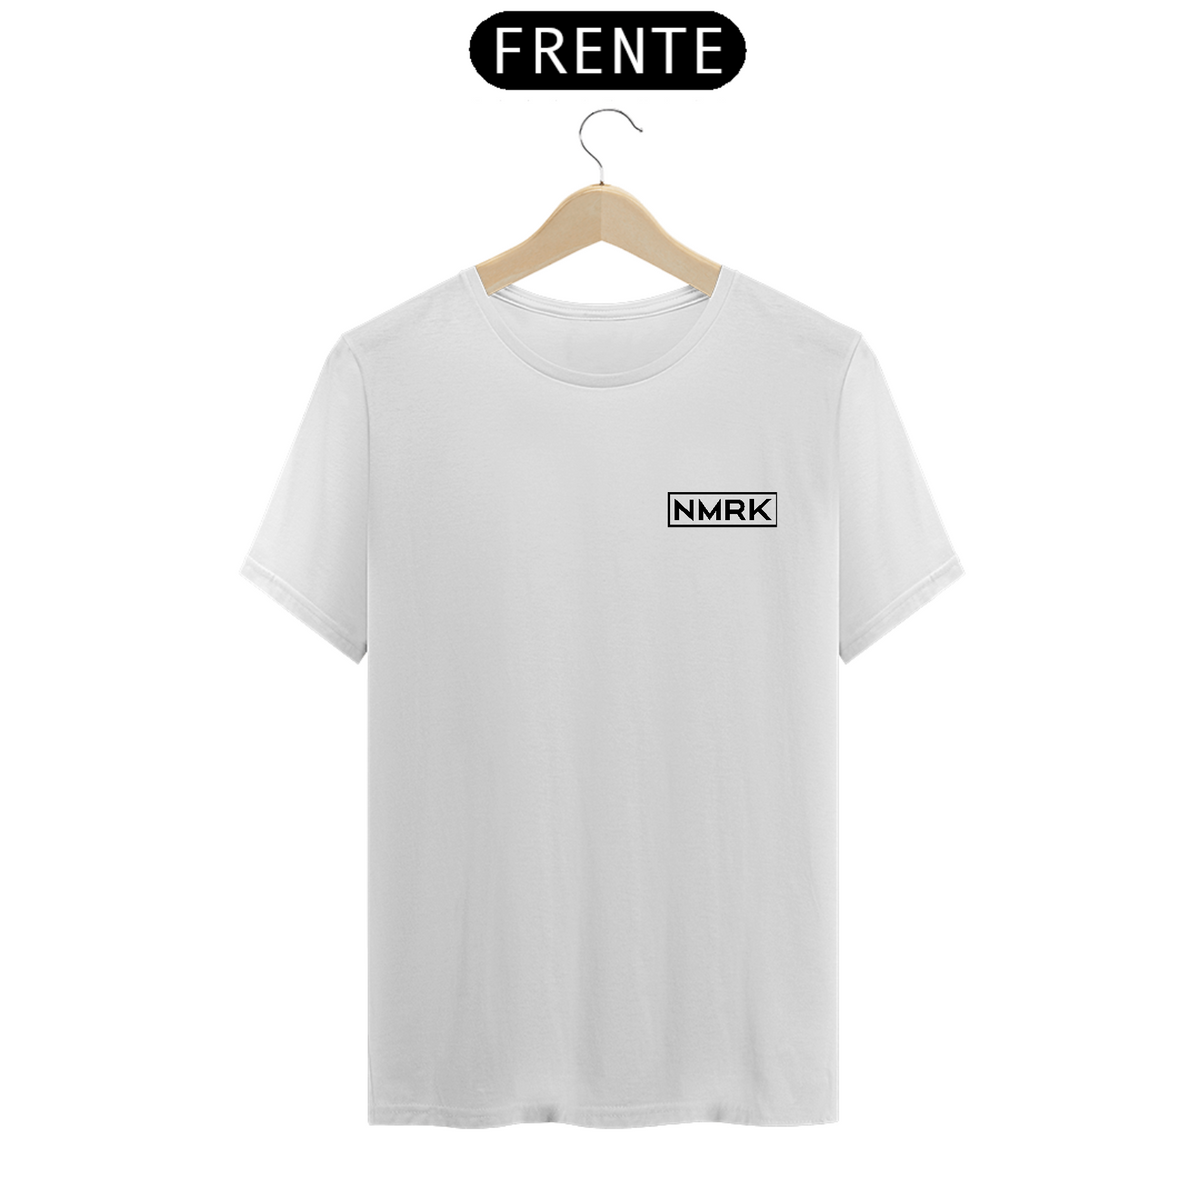 Nome do produto: Camiseta NMRK minimalista